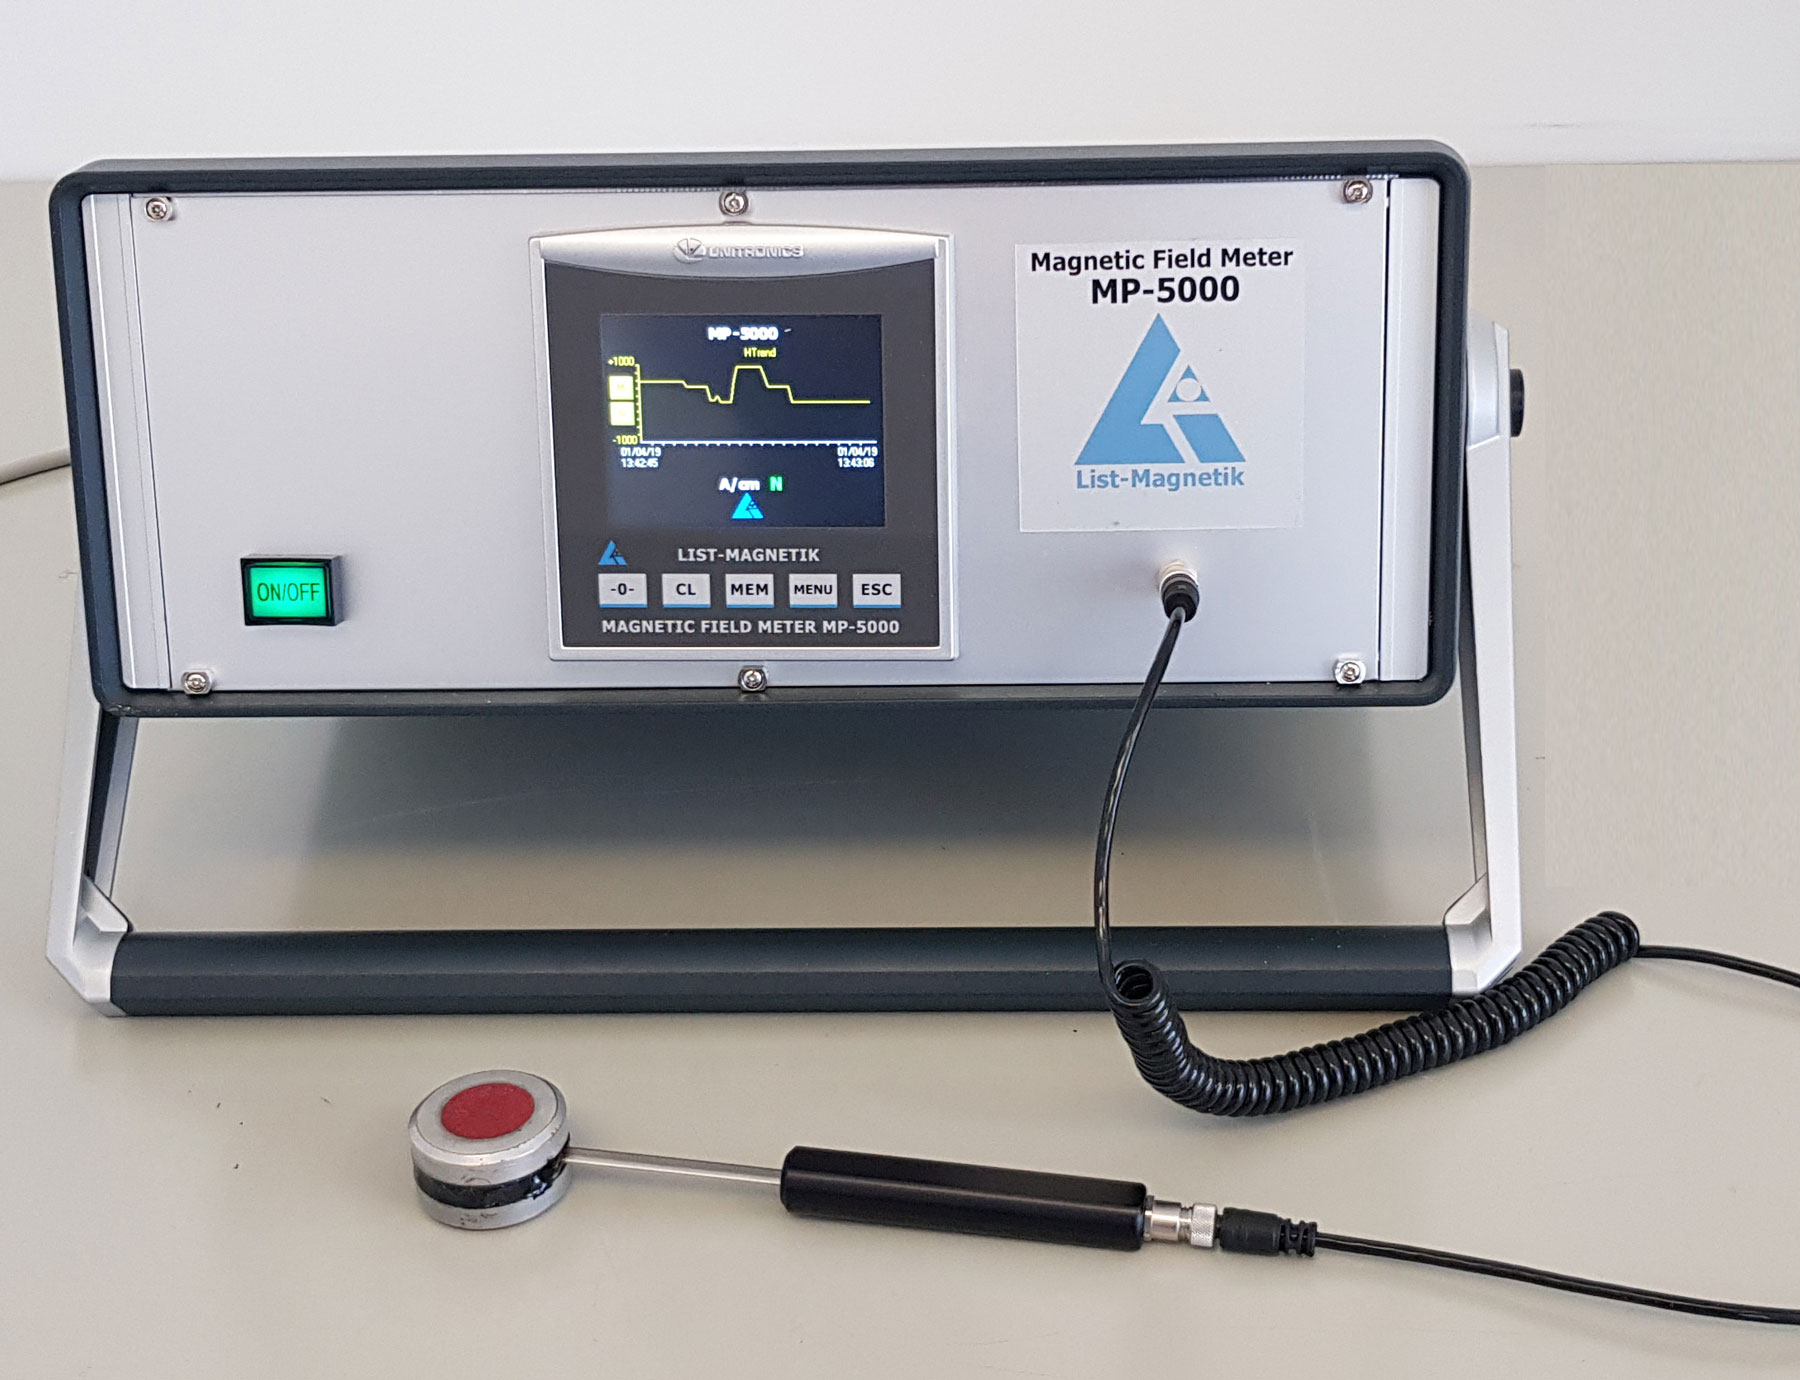 YJINGRUI Digital Gauss Meter Surface Magnetic Field Tester Tesla Meter Tester 0-200mT-2000mT for DC/AC Magnetic Field with Metal Guassmeter Probe 